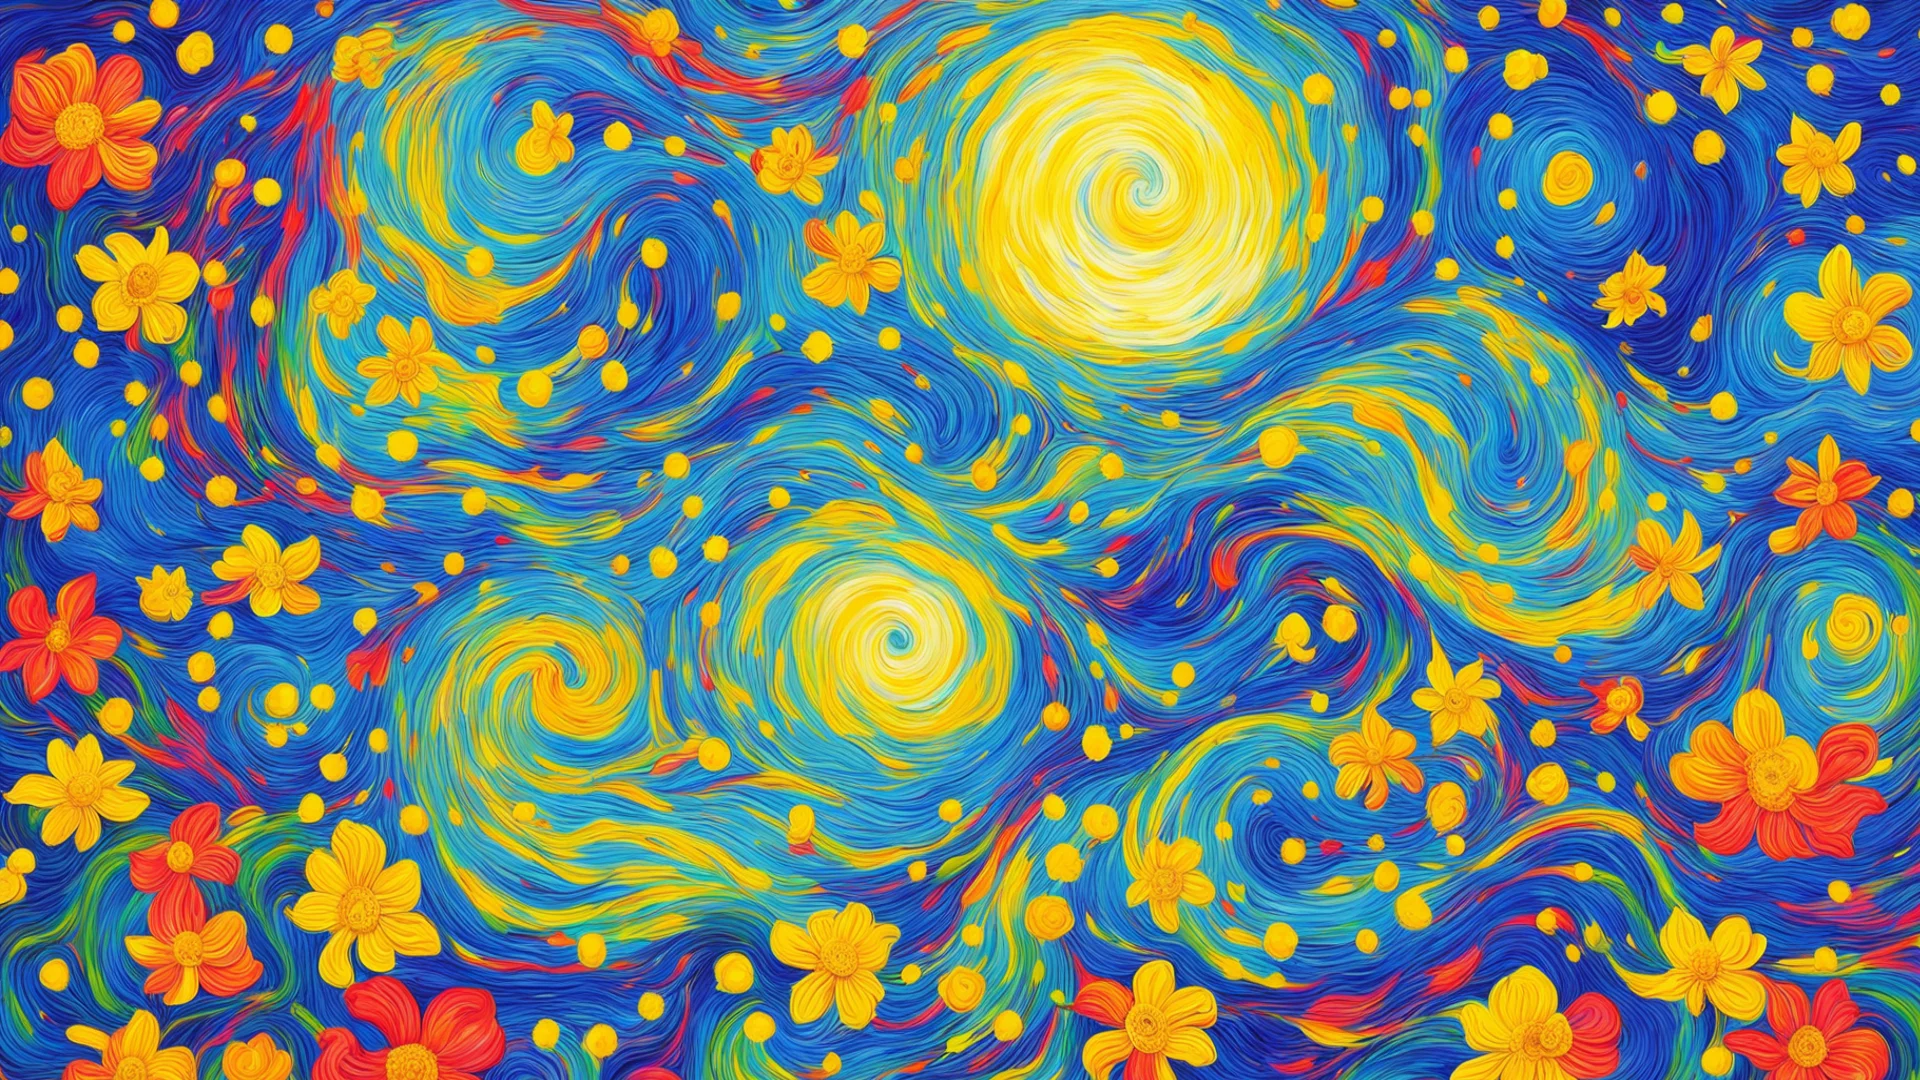 trending starry night van gogh beautiful colors swirl flowers good looking fantastic 1 wide